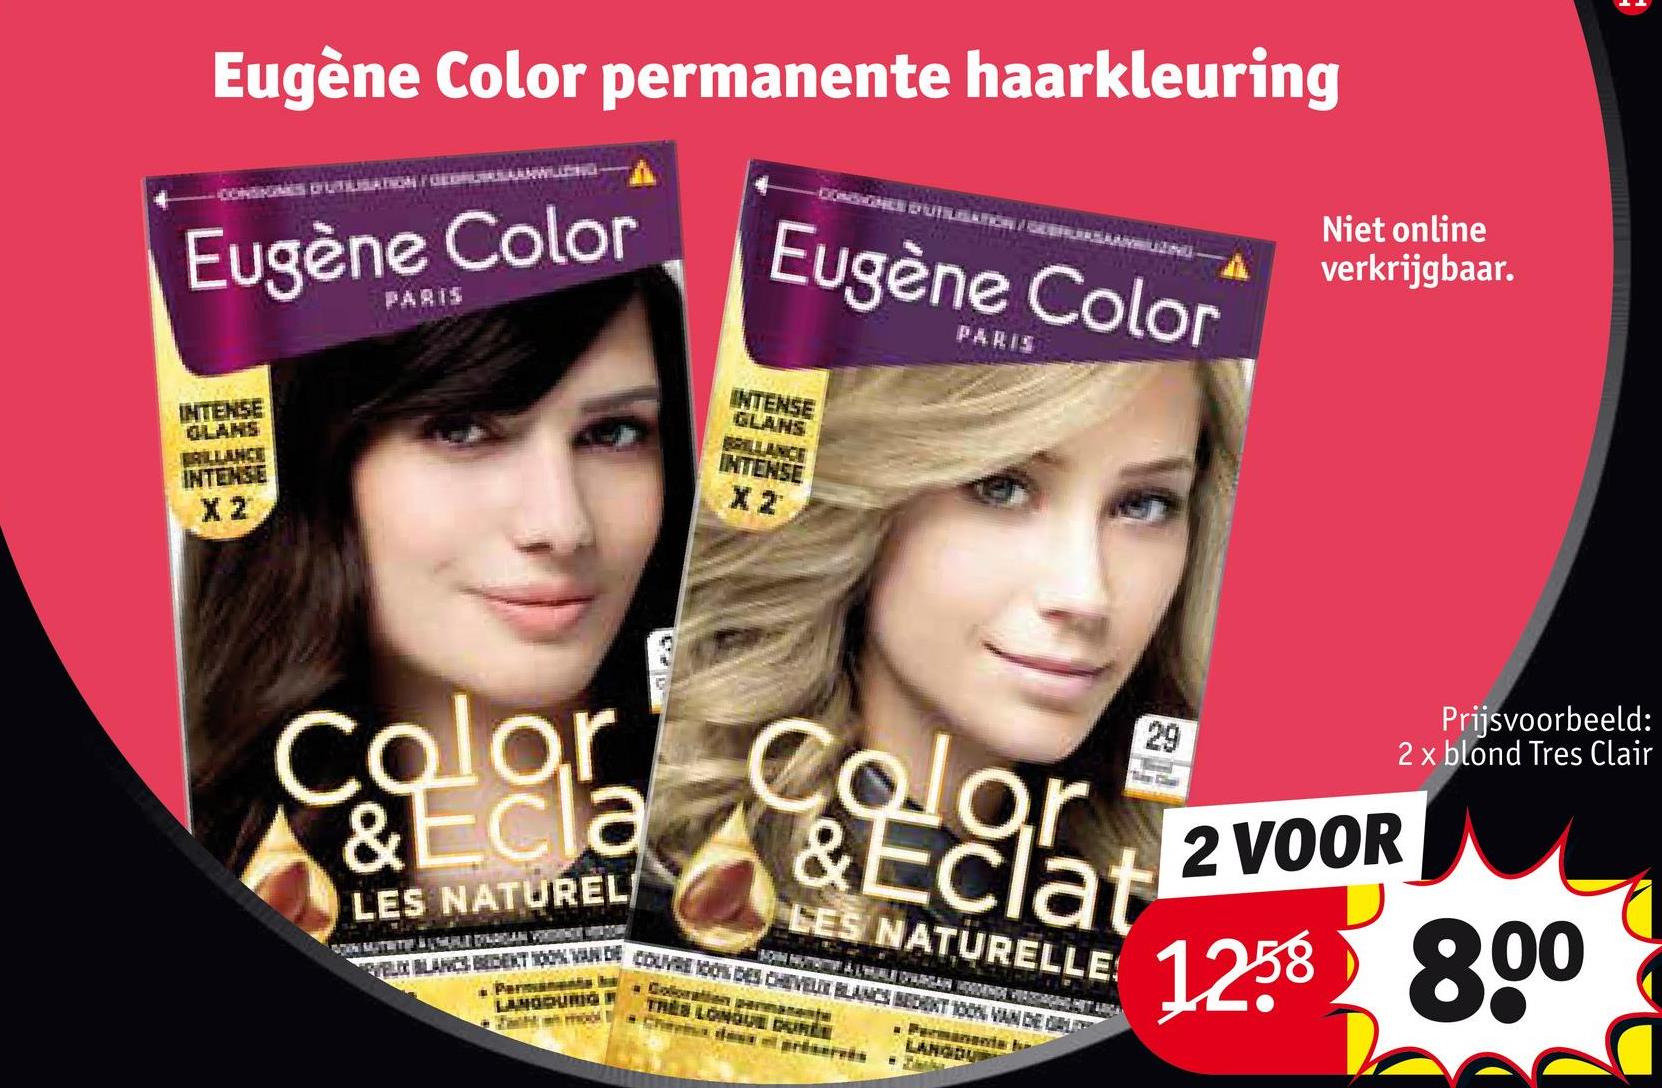 Eugène Color permanente haarkleuring
CONSIGNES UTILISATION / GEDRUSASLANWILLING-
Eugène Color
INTENSE
GLANS
BRILLANCE
INTENSE
X2
PARIS
-CONSIGNEE D'UTILISATION/
moo
AYRILIZING
Eugène Color
INTENSE
GLANS
BRILLANCE
INTENSE
Color
& Ecla
Color
C
& Eclat
LES NATUREL/
LES NATURELLE
SOIN NUTRITIVE À L'HUBLE OPWARGAN HOGDENDE VERZORGING HET ARGA
SOON MUTRITIE BEDAAN VORDINGLE WITH DOAR
VELIX BLANCS BEDENT 100% VAN DE COUVRE 100% DES CHEVEUX BLANCS BEDENT 100% VAN DE GE
Permanent a
LANGDURIG R
PARIS
Coloration permanente
TRES LONGUE DURÉE
Chemdes et préservés
Permanents
LANGDUP
29
Borrel
Niet online
verkrijgbaar.
1
Prijsvoorbeeld:
2 x blond Tres Clair
2 VOOR
1258 800